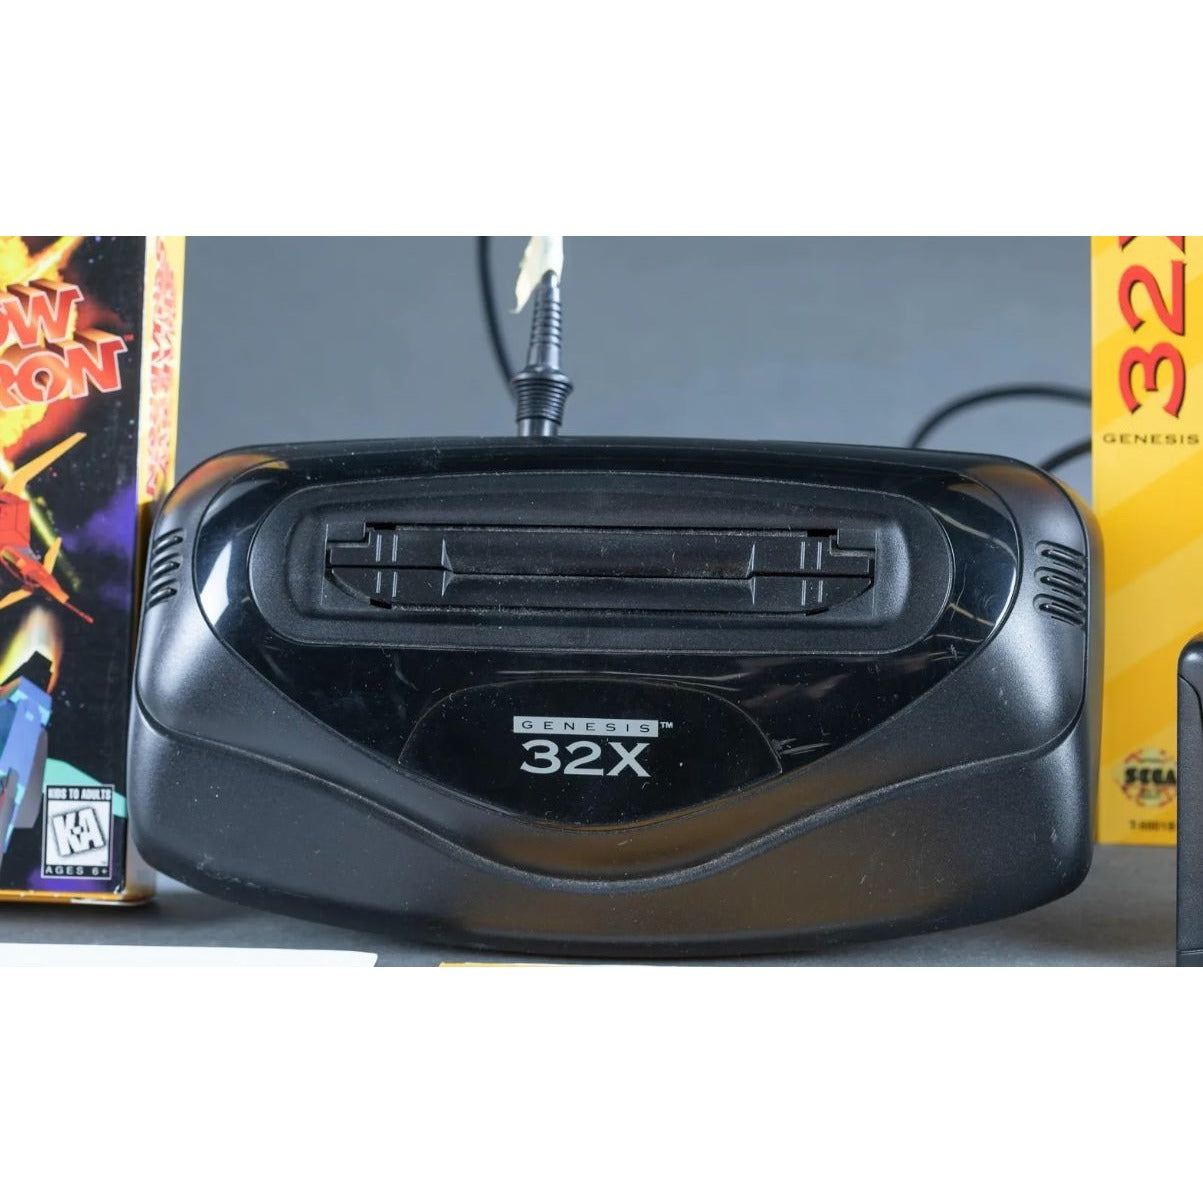 Sega Genesis 32X unit & 11 games